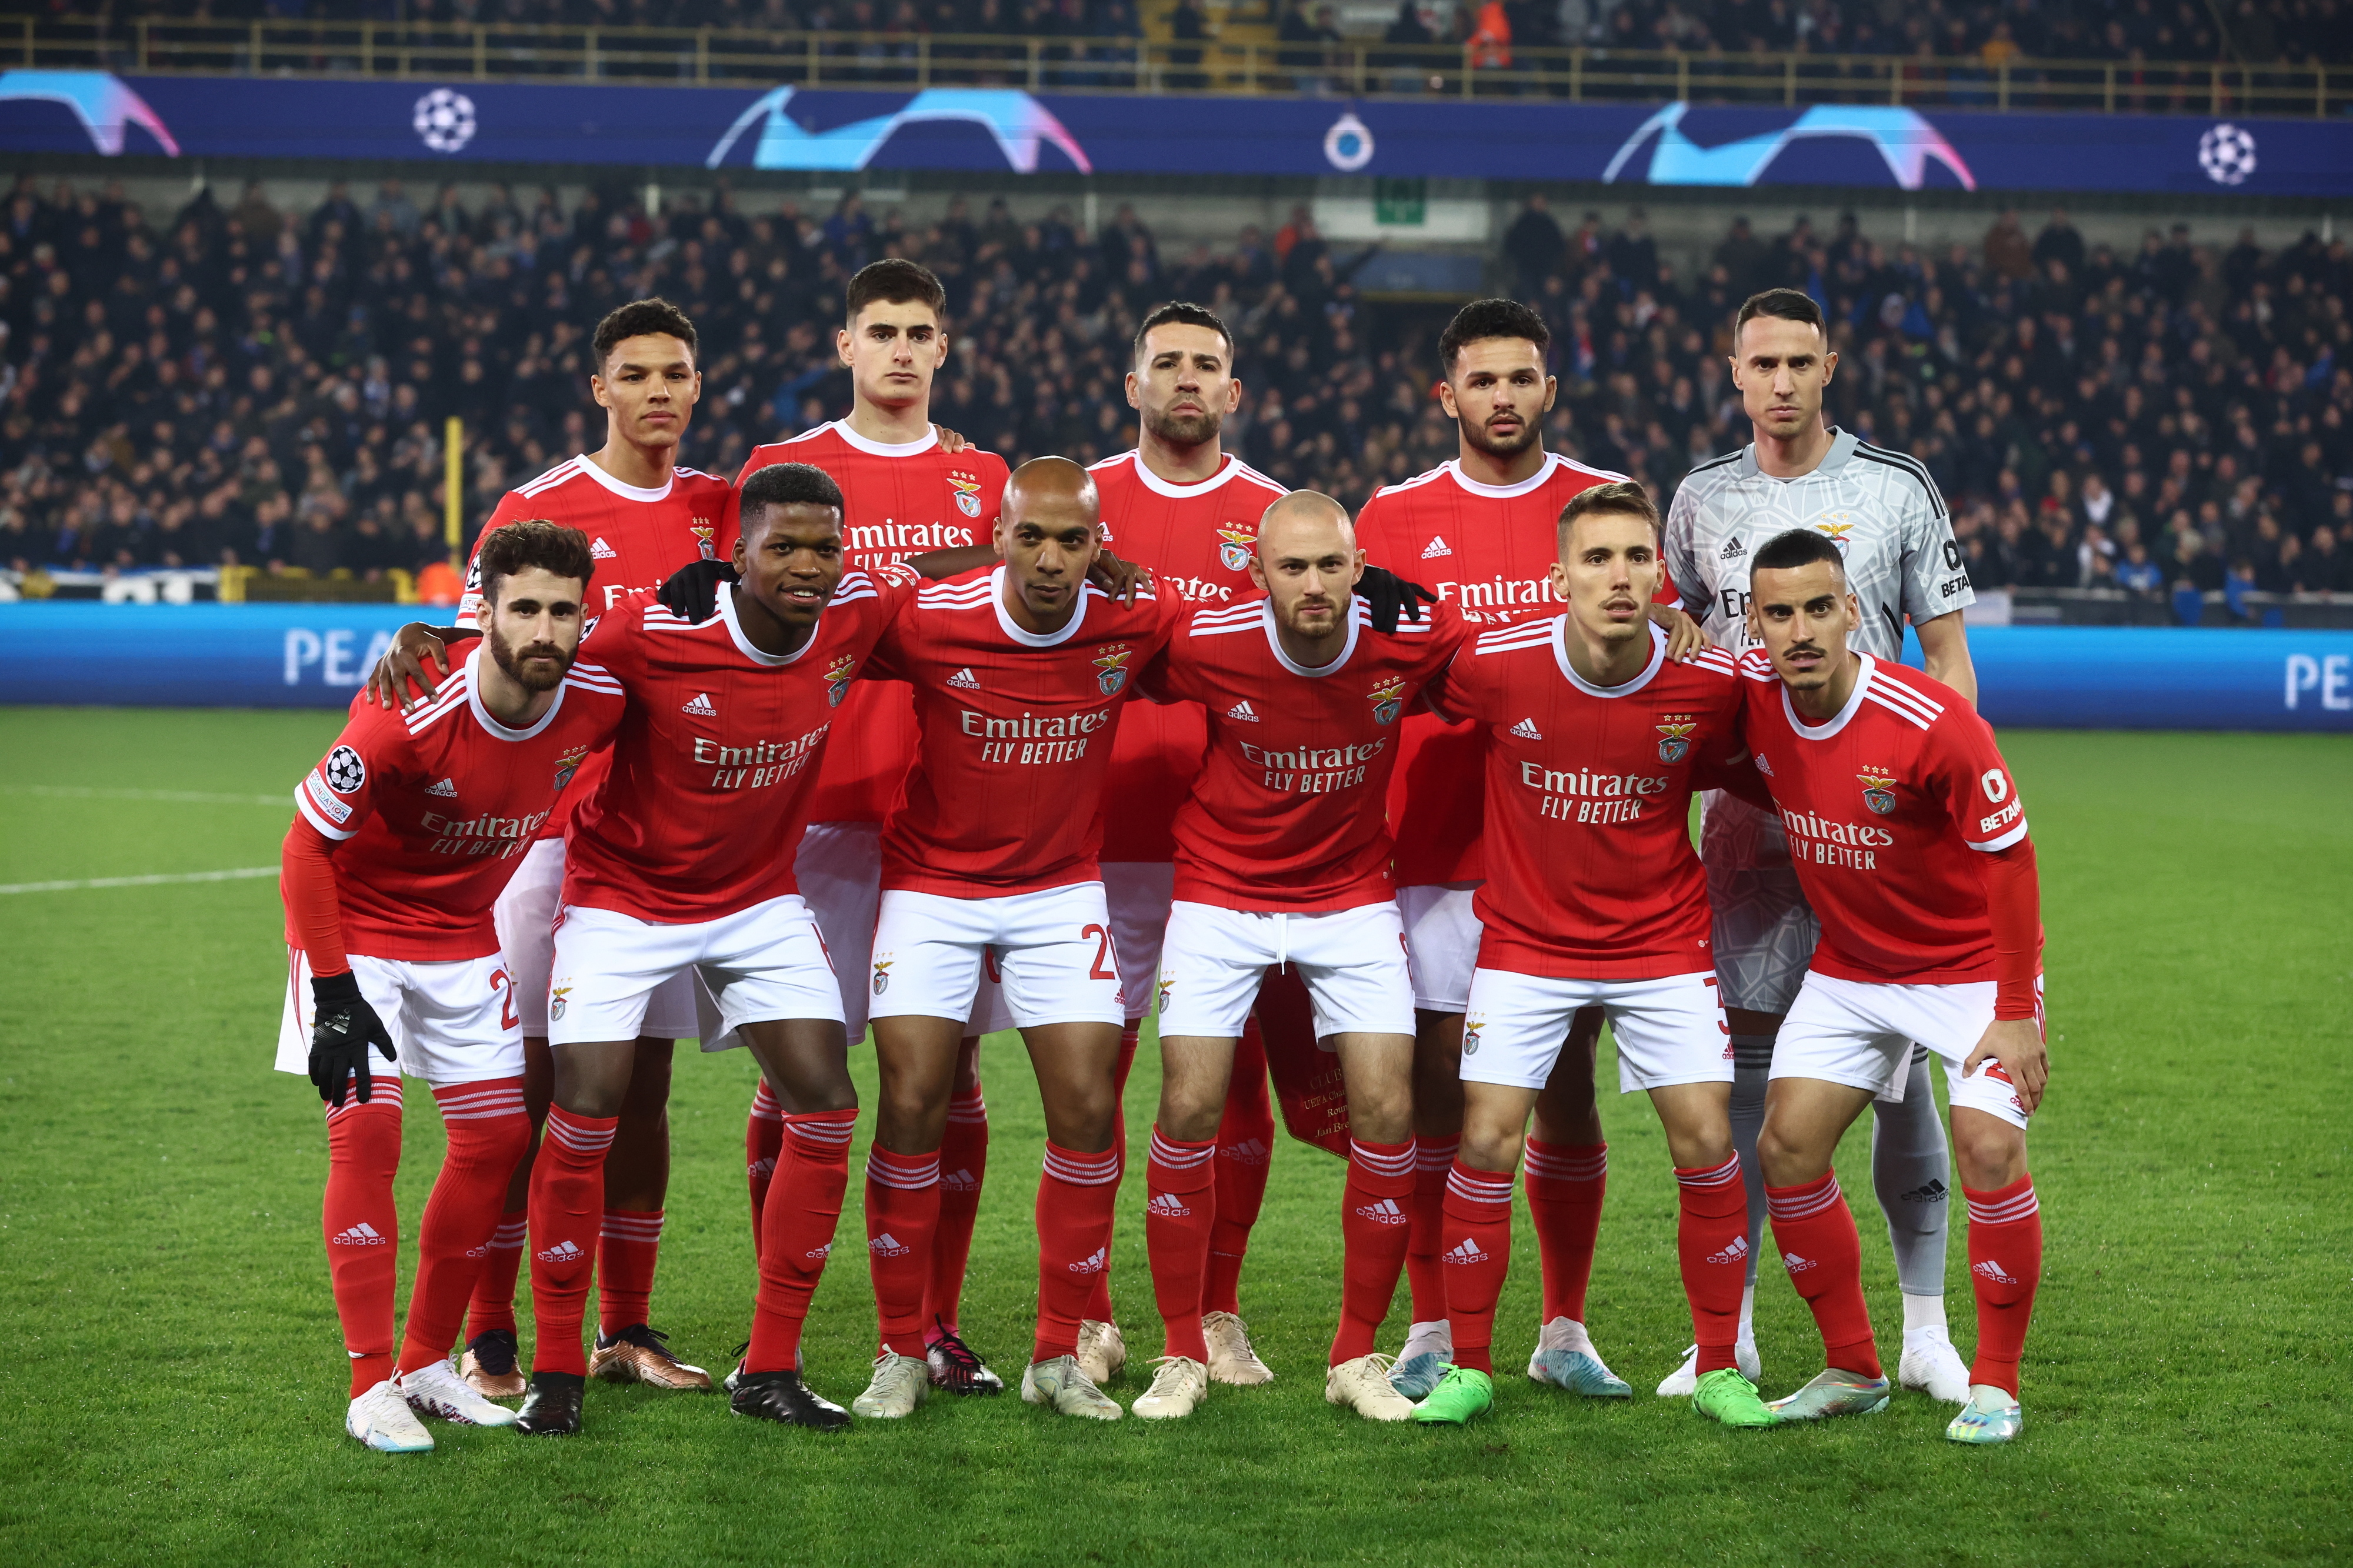 À atenção do Benfica: Club Brugge regressa aos triunfos no campeonato belga  - Futebol 365